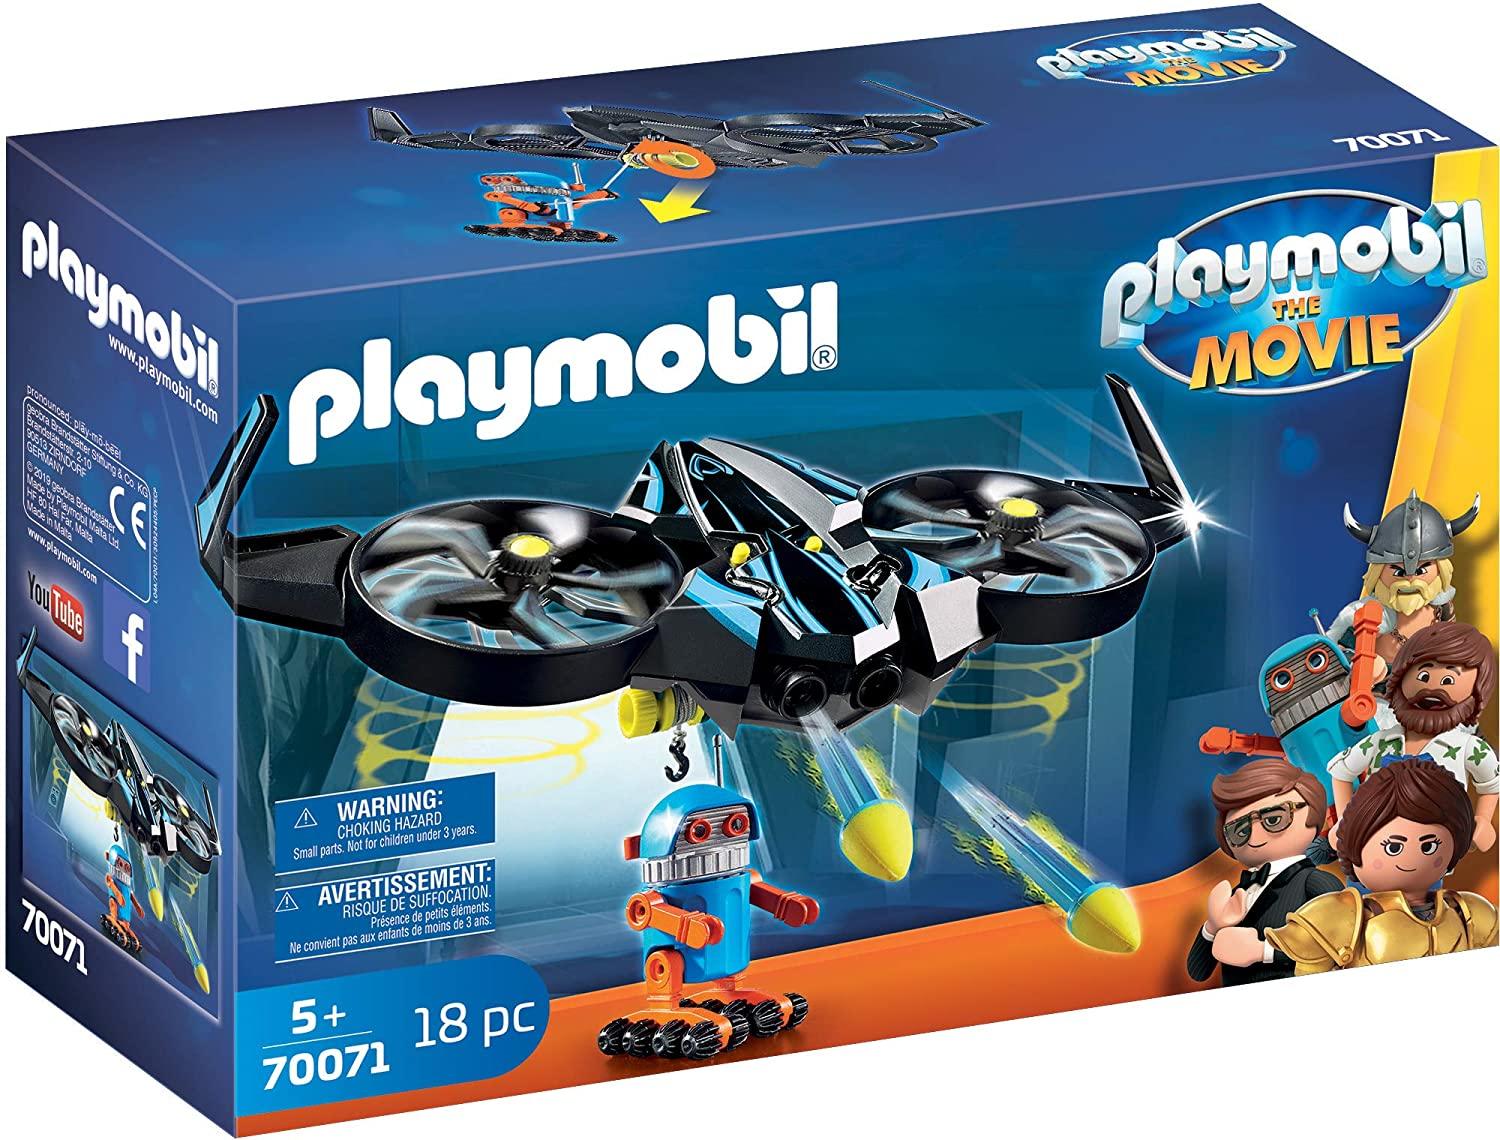 Playmobil 70071 The Movie Robotitron Toymaster Ballina